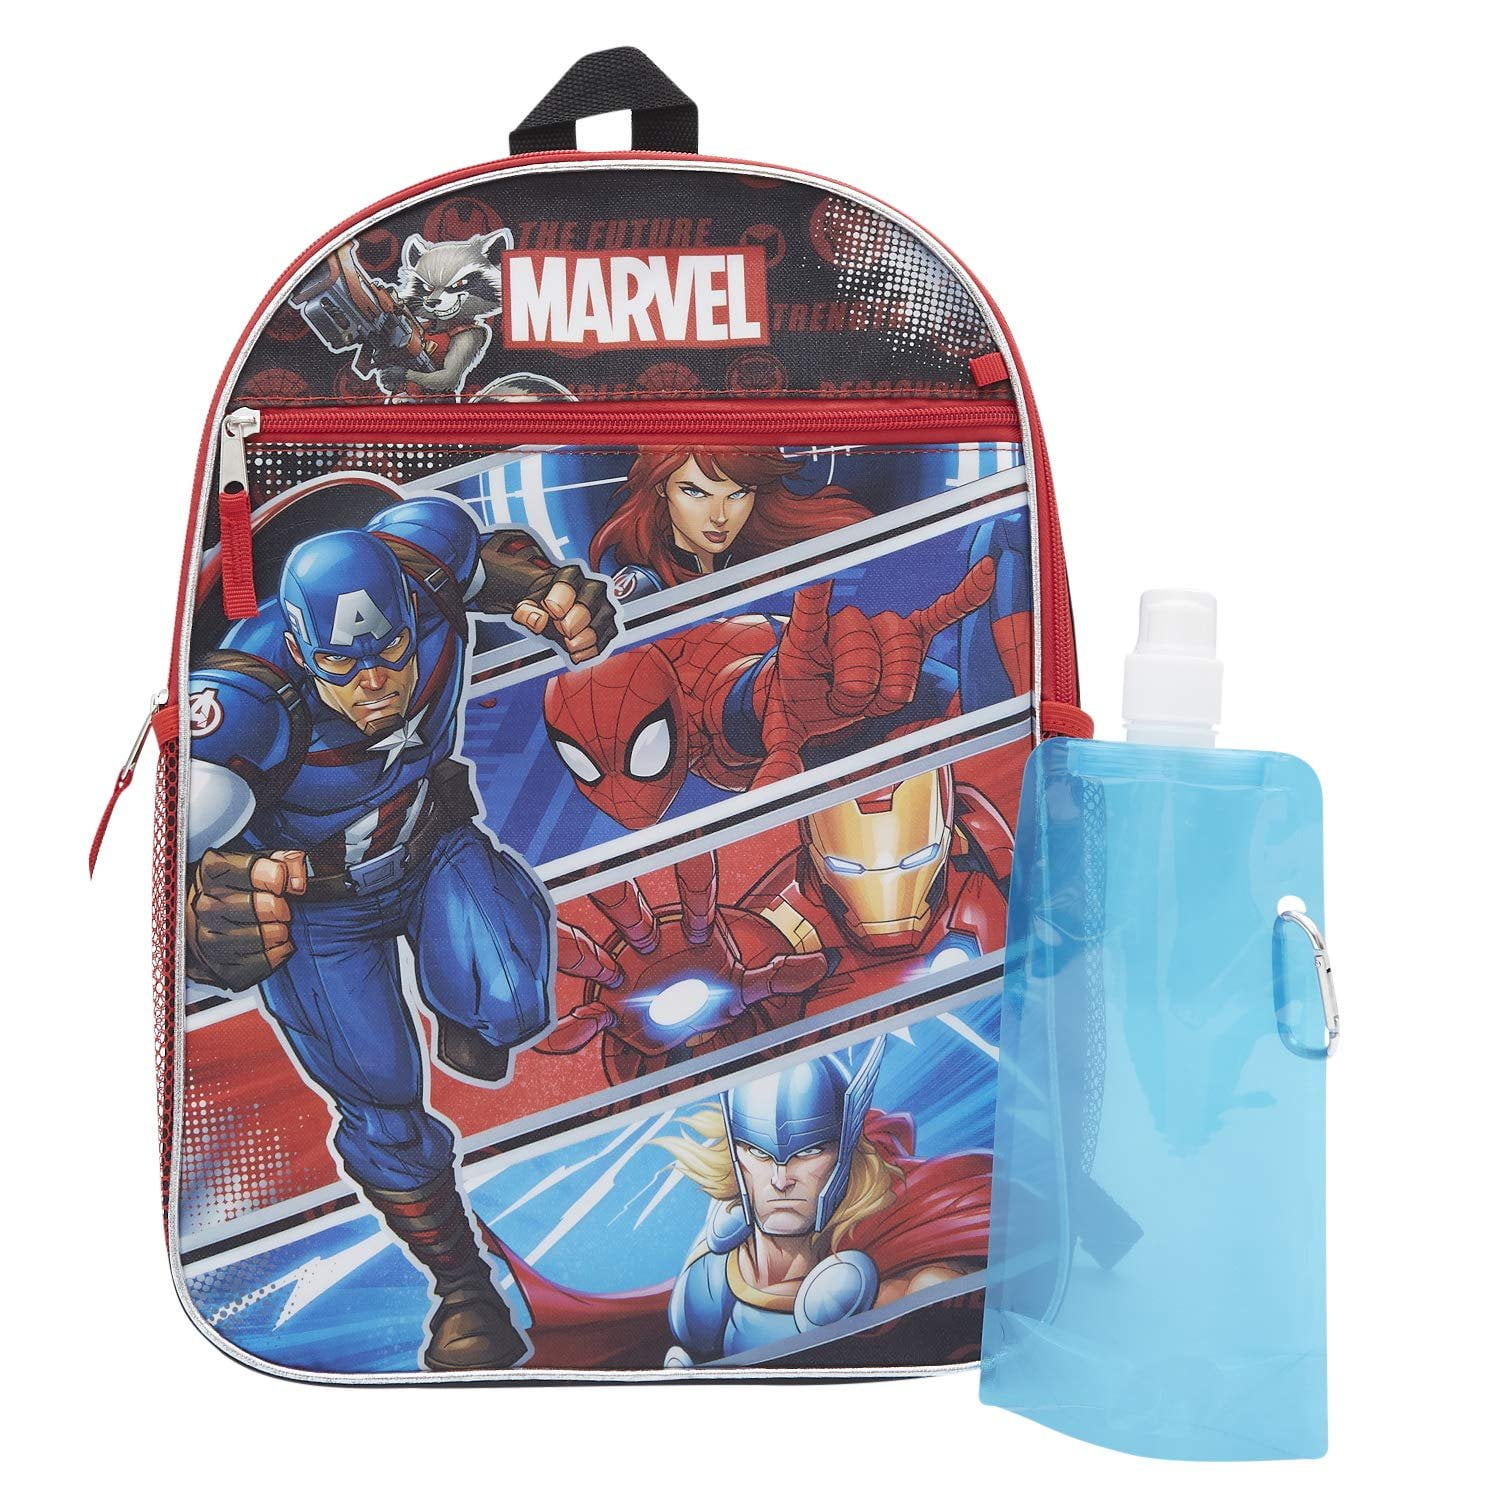 Marvel Marvel Avengers Backpack Combo Set Avengers